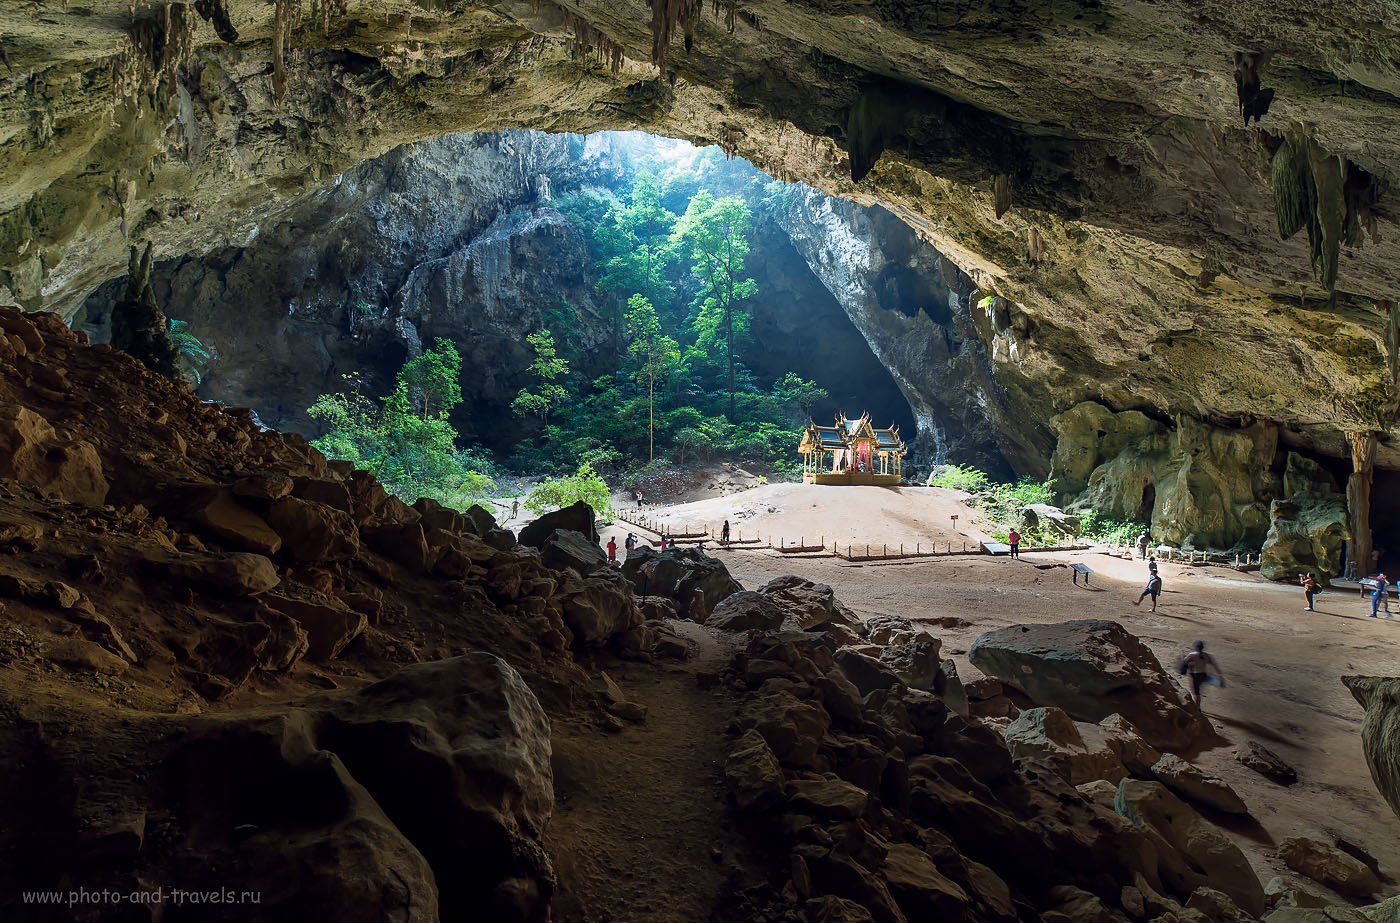 Фотография 14. Оцените динамический диапазон матрицы фотоаппарата Никон Д610. Пещера (Phraya Nakhon cave снята одним кадром. Объектив Самъянг 14/2,8. (100, 14, 9.0, 0.4 сек.)